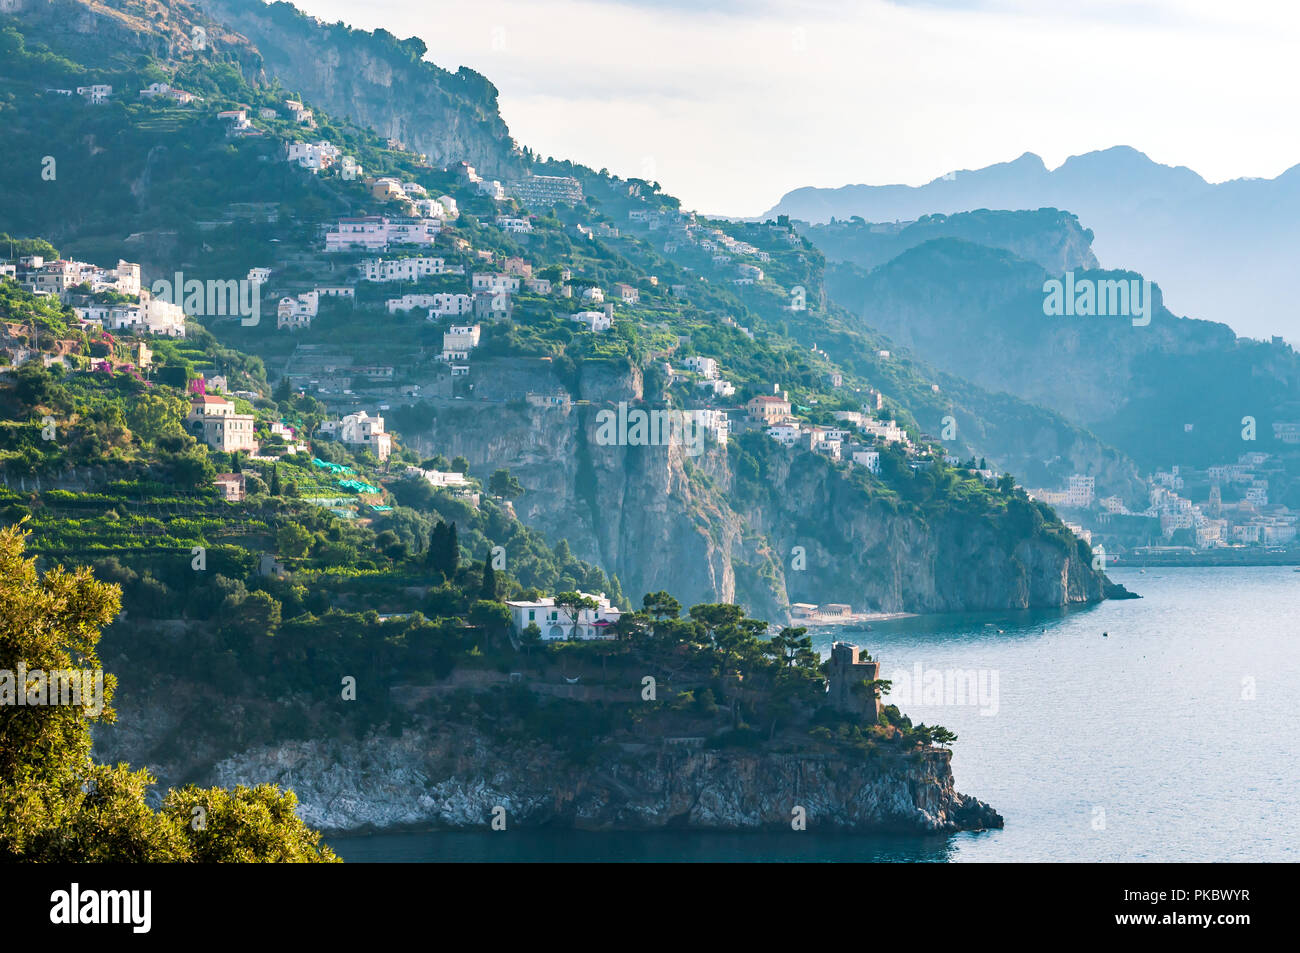 La costa de Amalfi con promontorios rocosos hasta el mar Mediterráneo, Italia Foto de stock